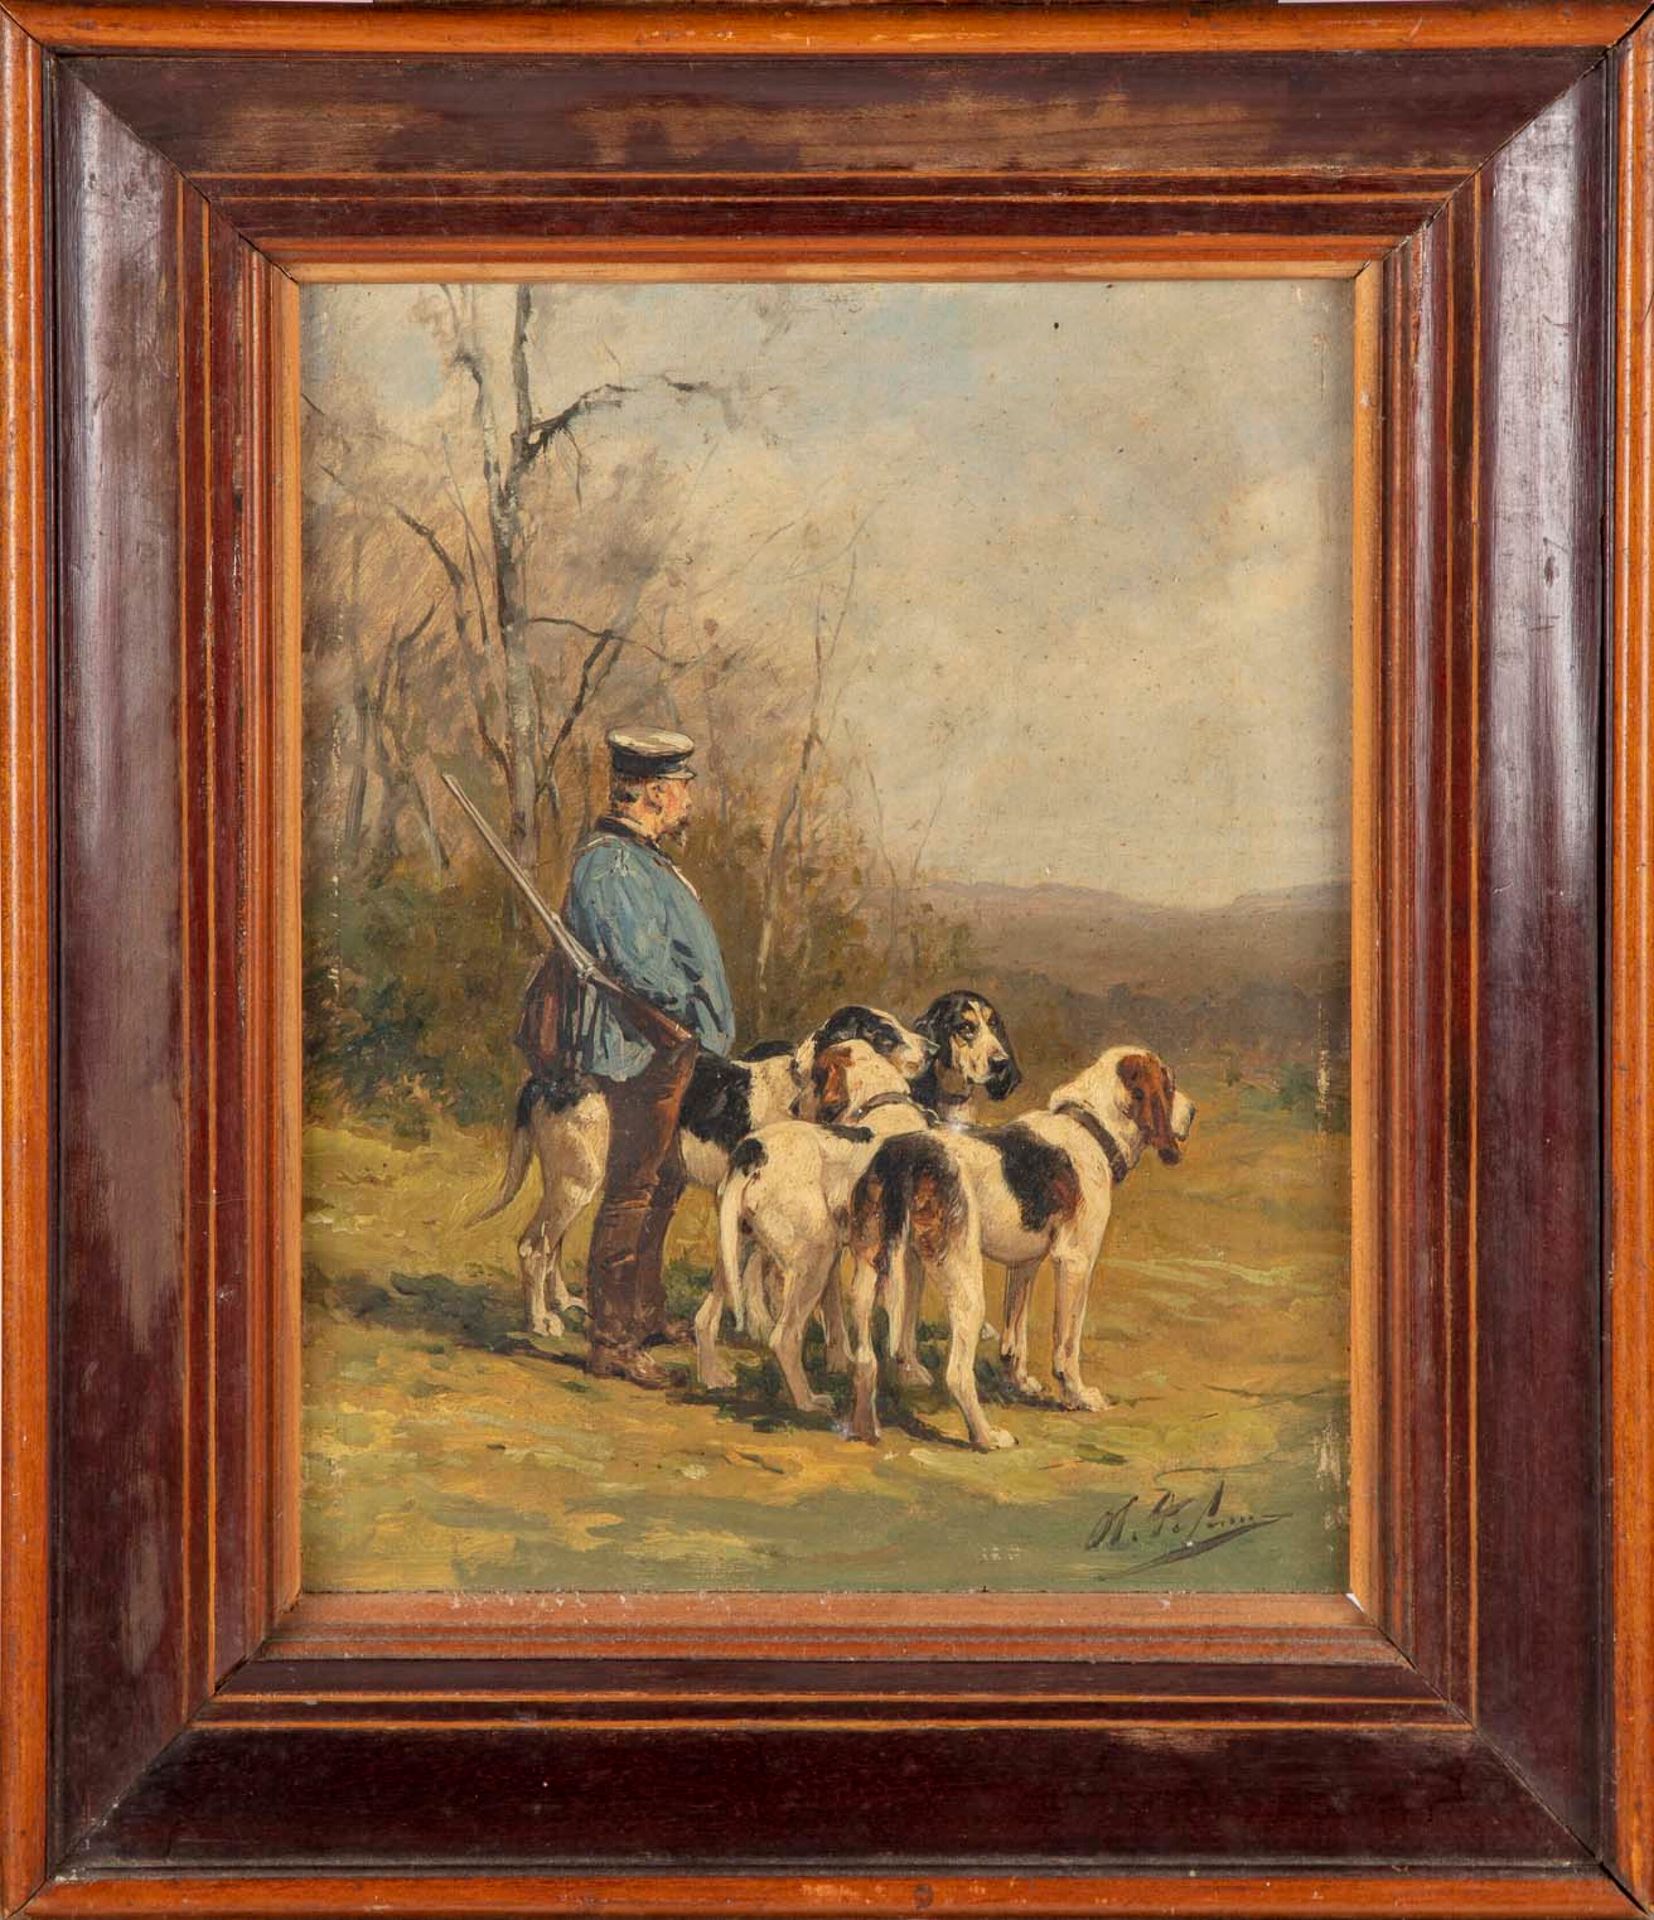 De Penne Olivier Charles de PENNE (1831-1897).

Il cacciatore e i suoi cani

Can&hellip;